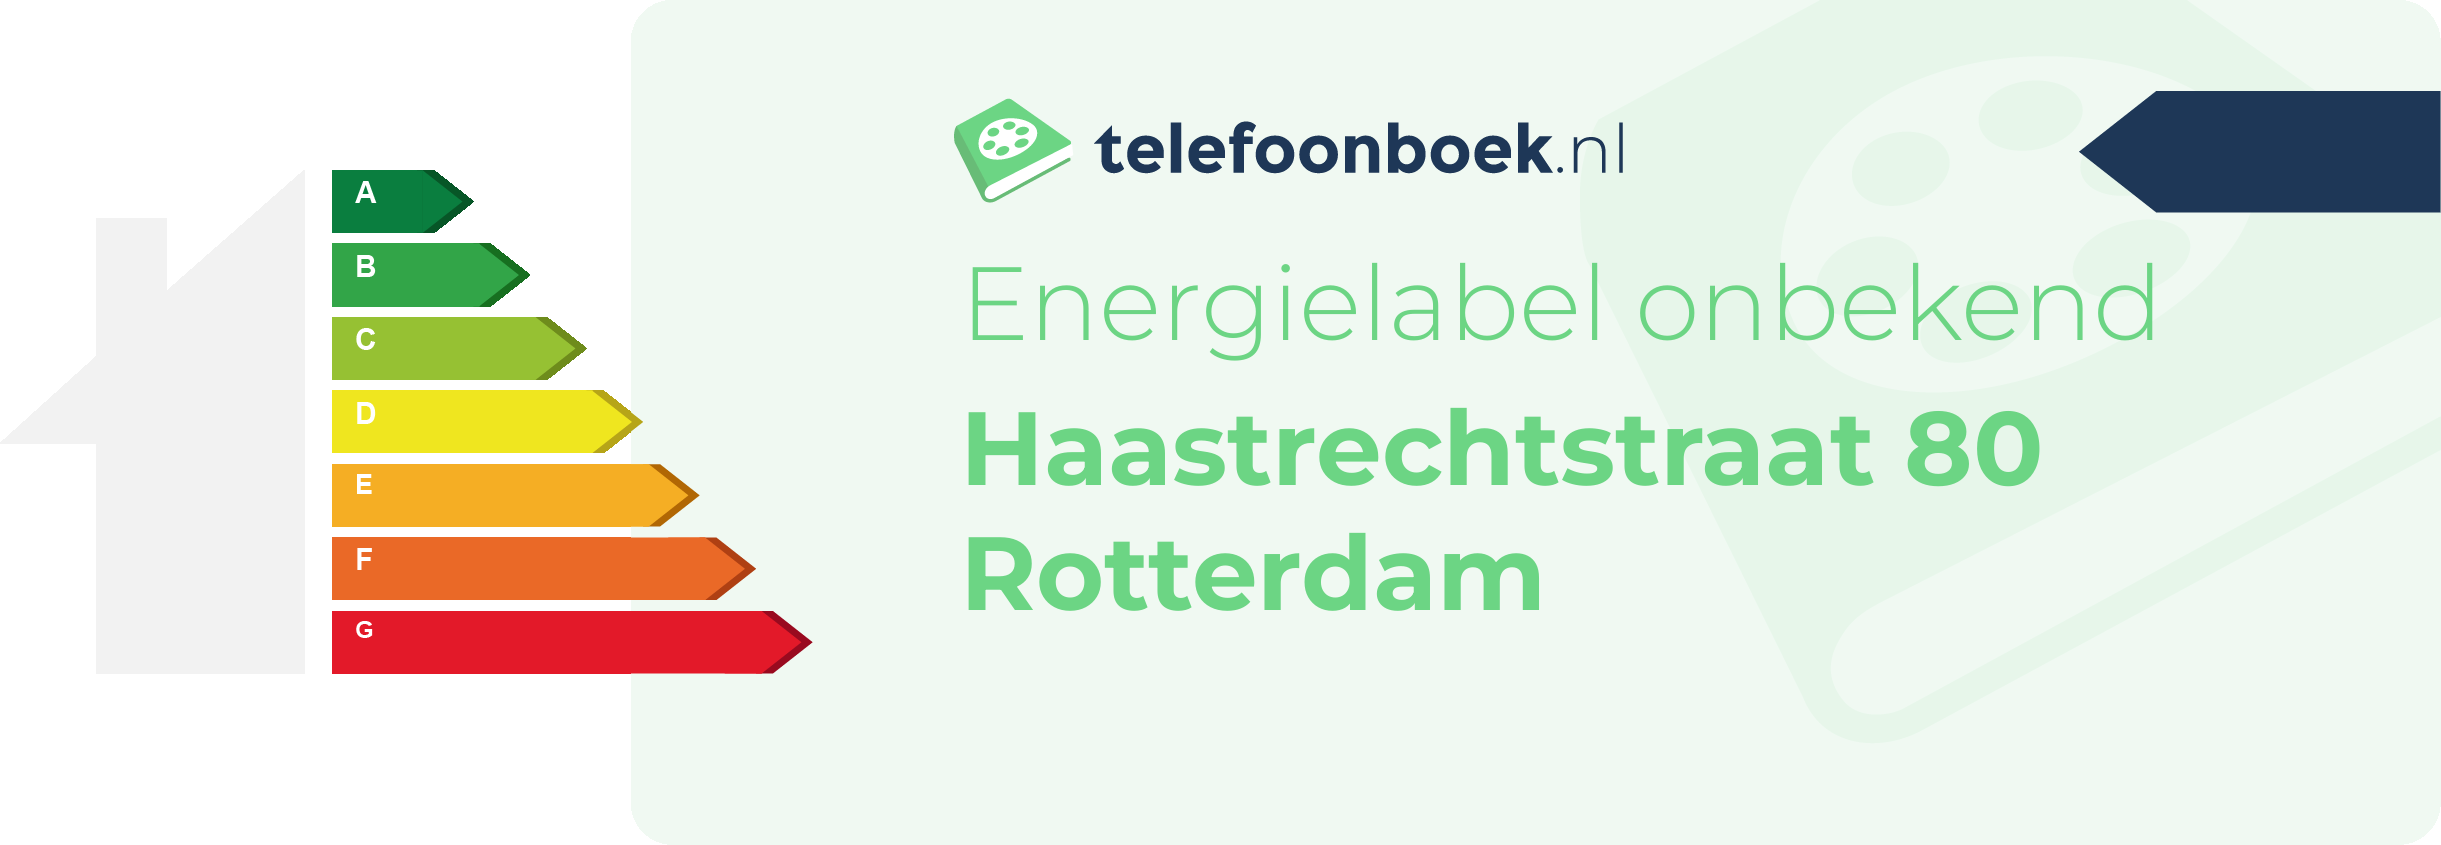 Energielabel Haastrechtstraat 80 Rotterdam